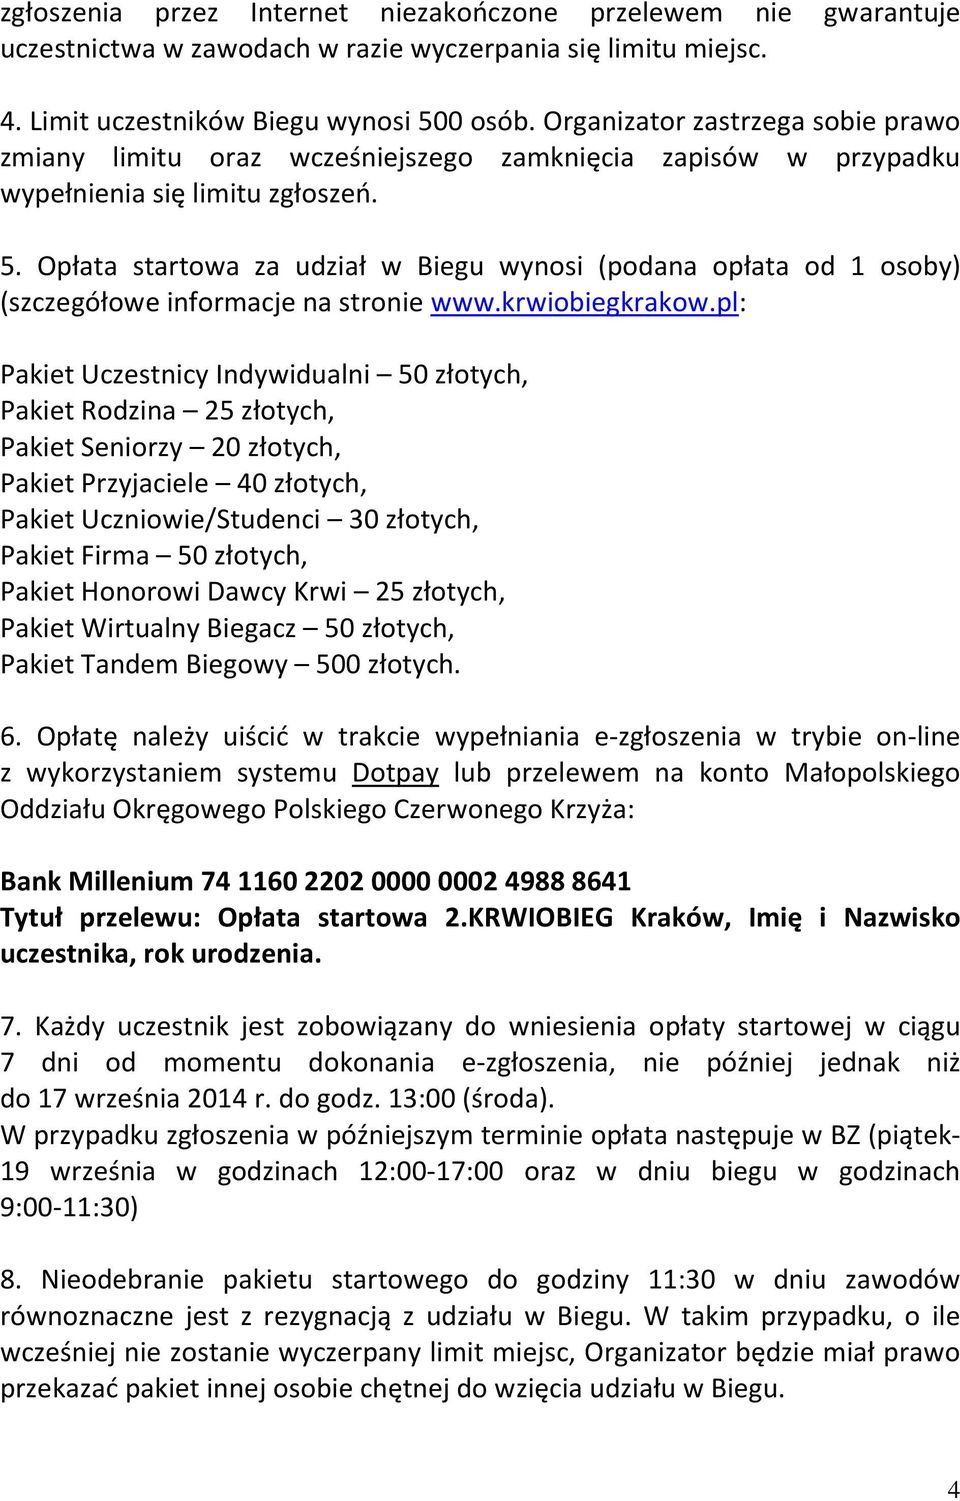 Opłata startowa za udział w Biegu wynosi (podana opłata od 1 osoby) (szczegółowe informacje na stronie www.krwiobiegkrakow.